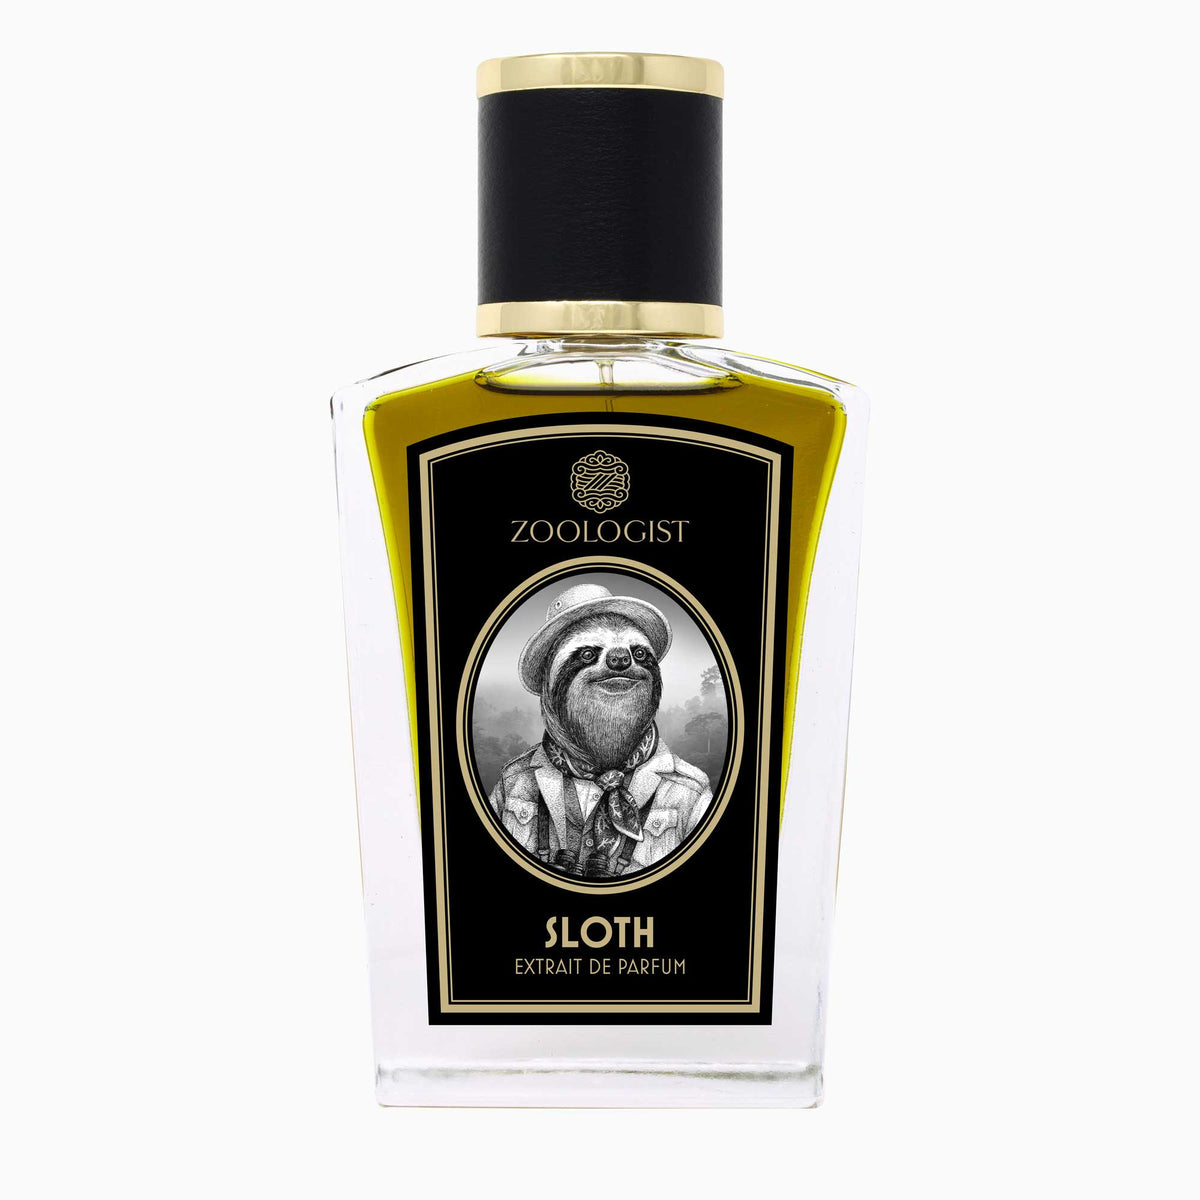 zoologist sloth ekstrakt perfum 0.5 ml   